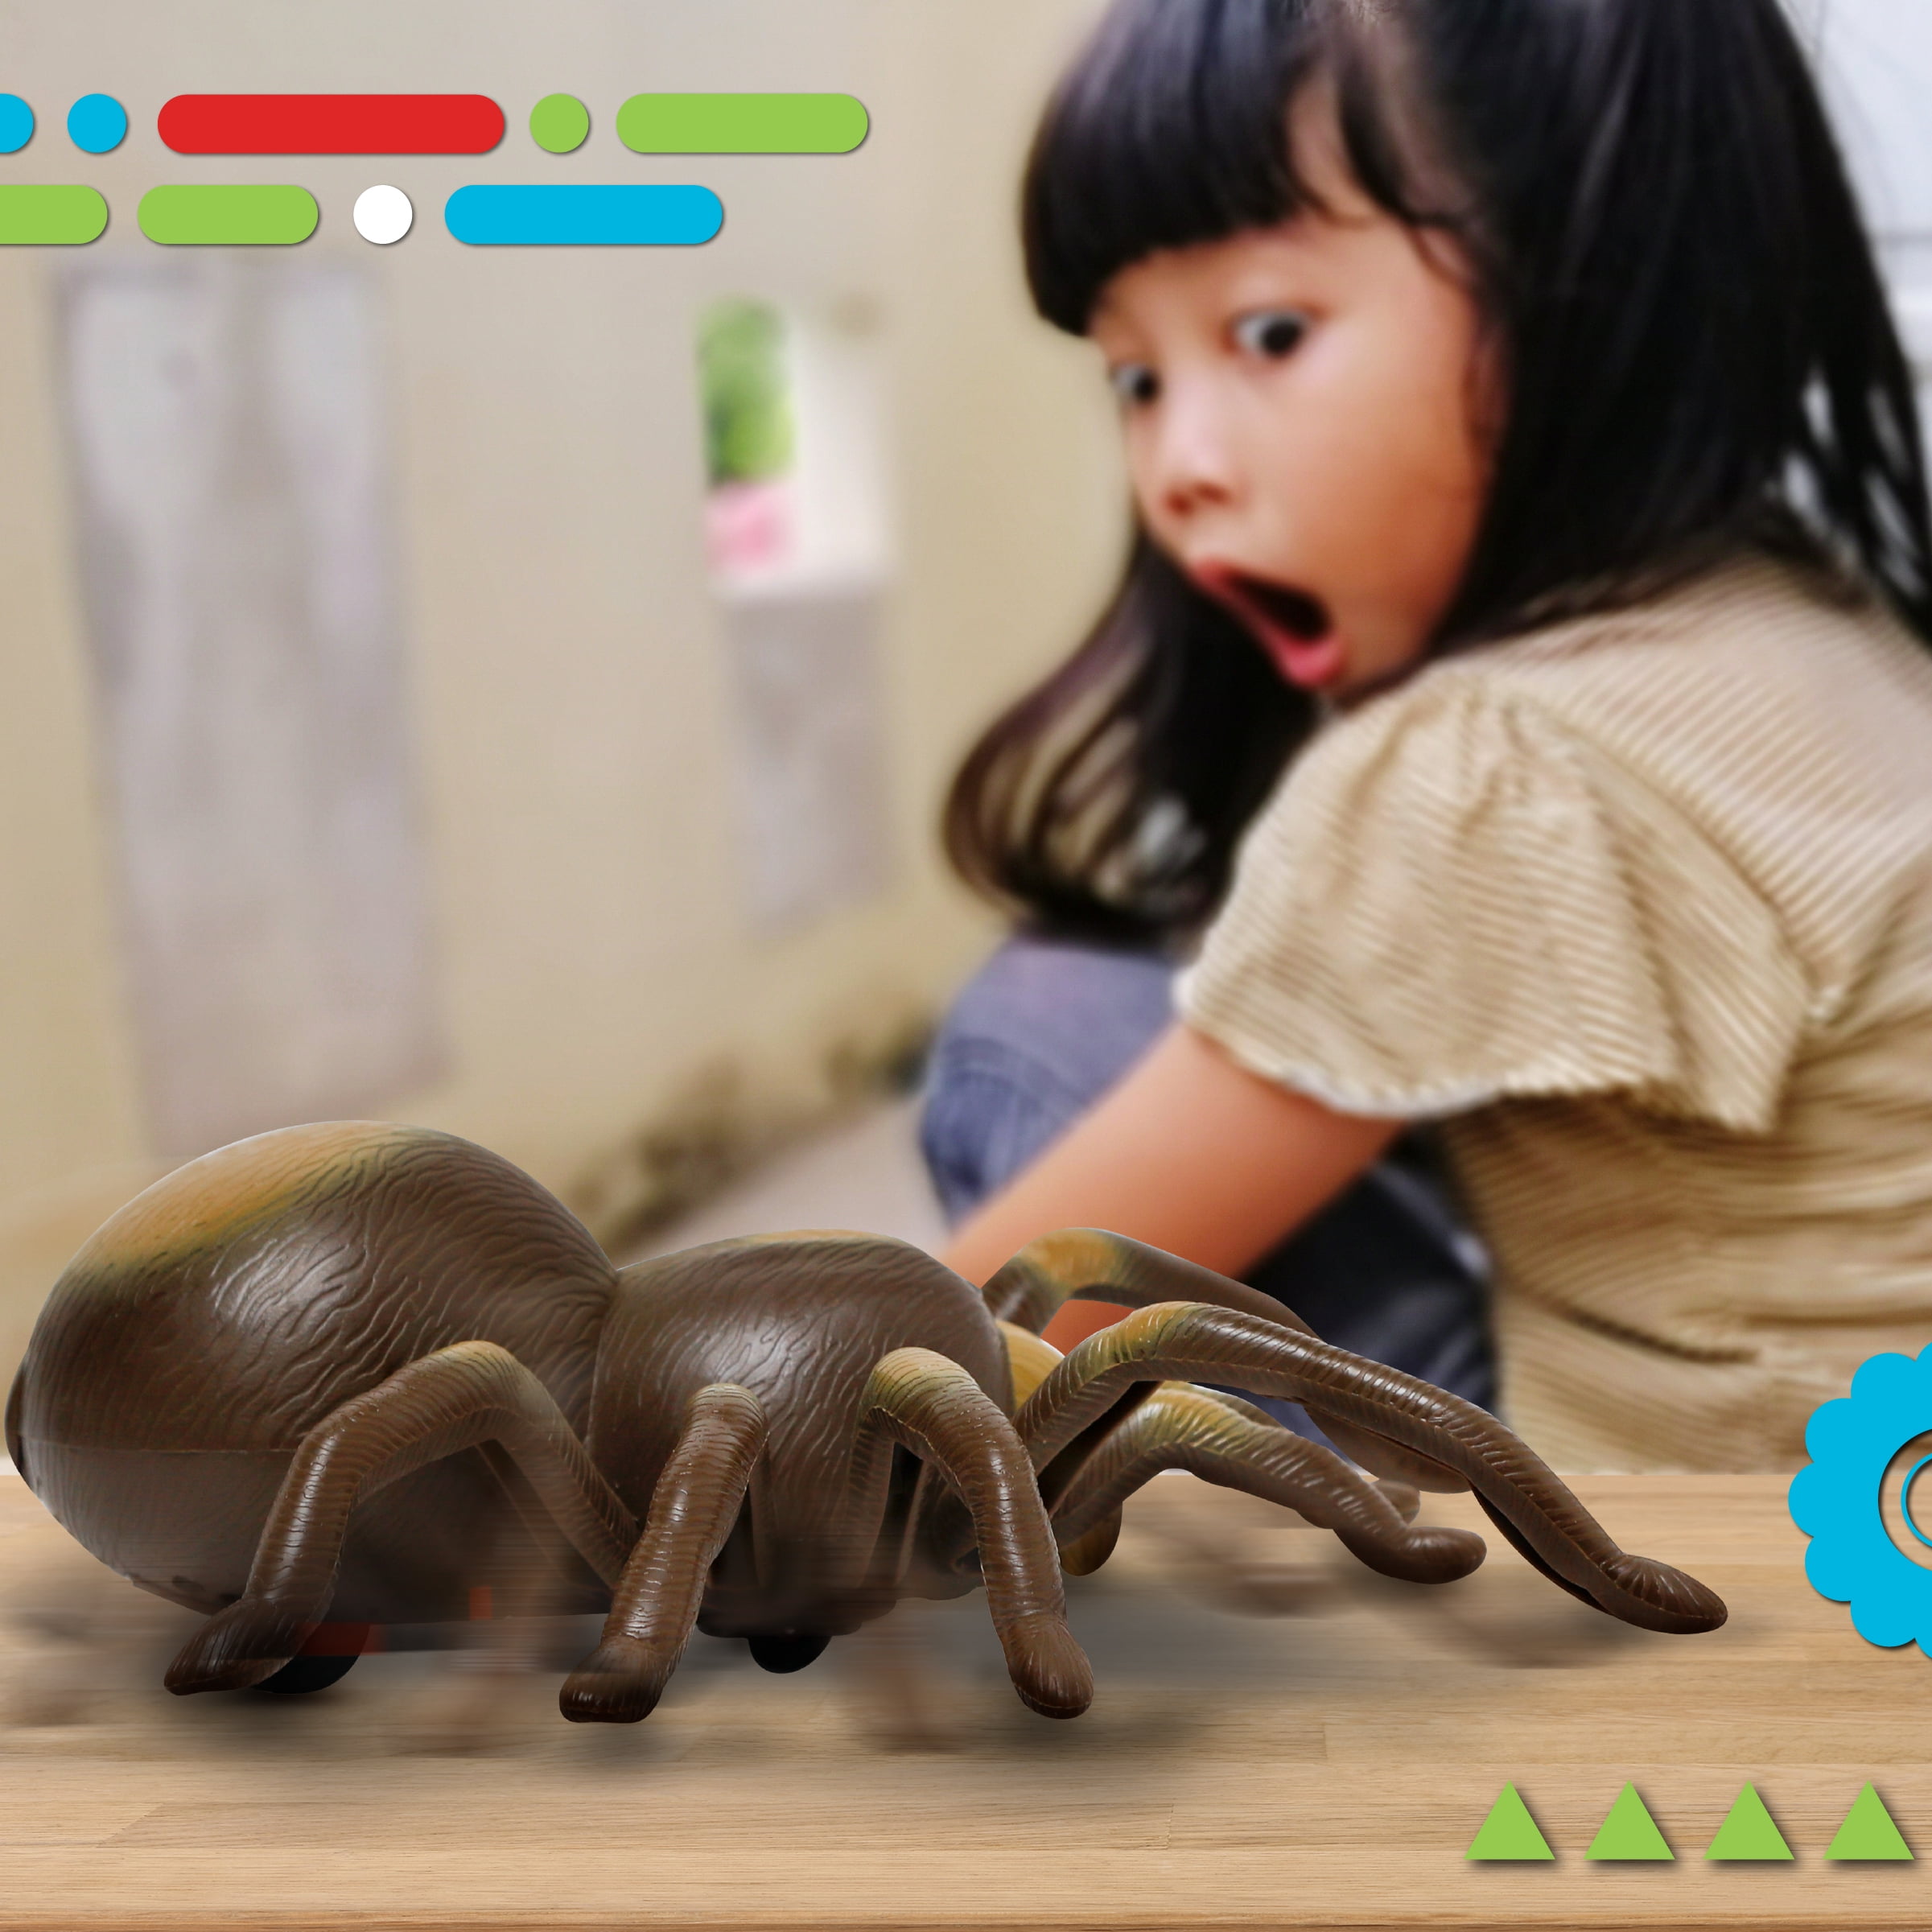 Voiture télécommandée Discovery Kids rc tarantula - araignée aux yeux  lumineux et sonore